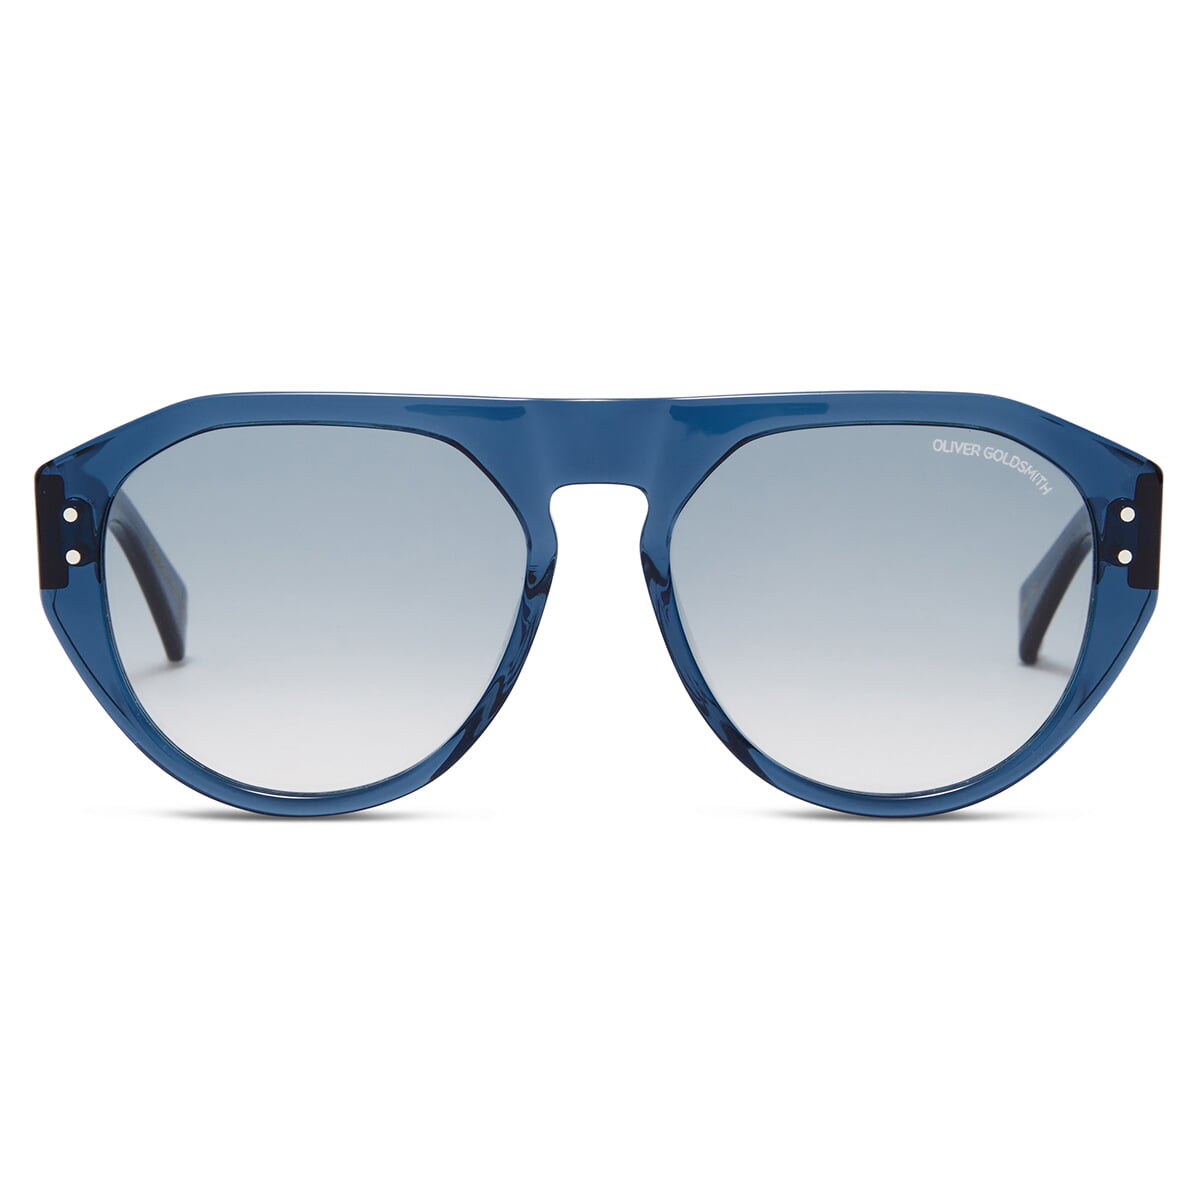 Gopas WS Sunglasses with Cadet acetate frame